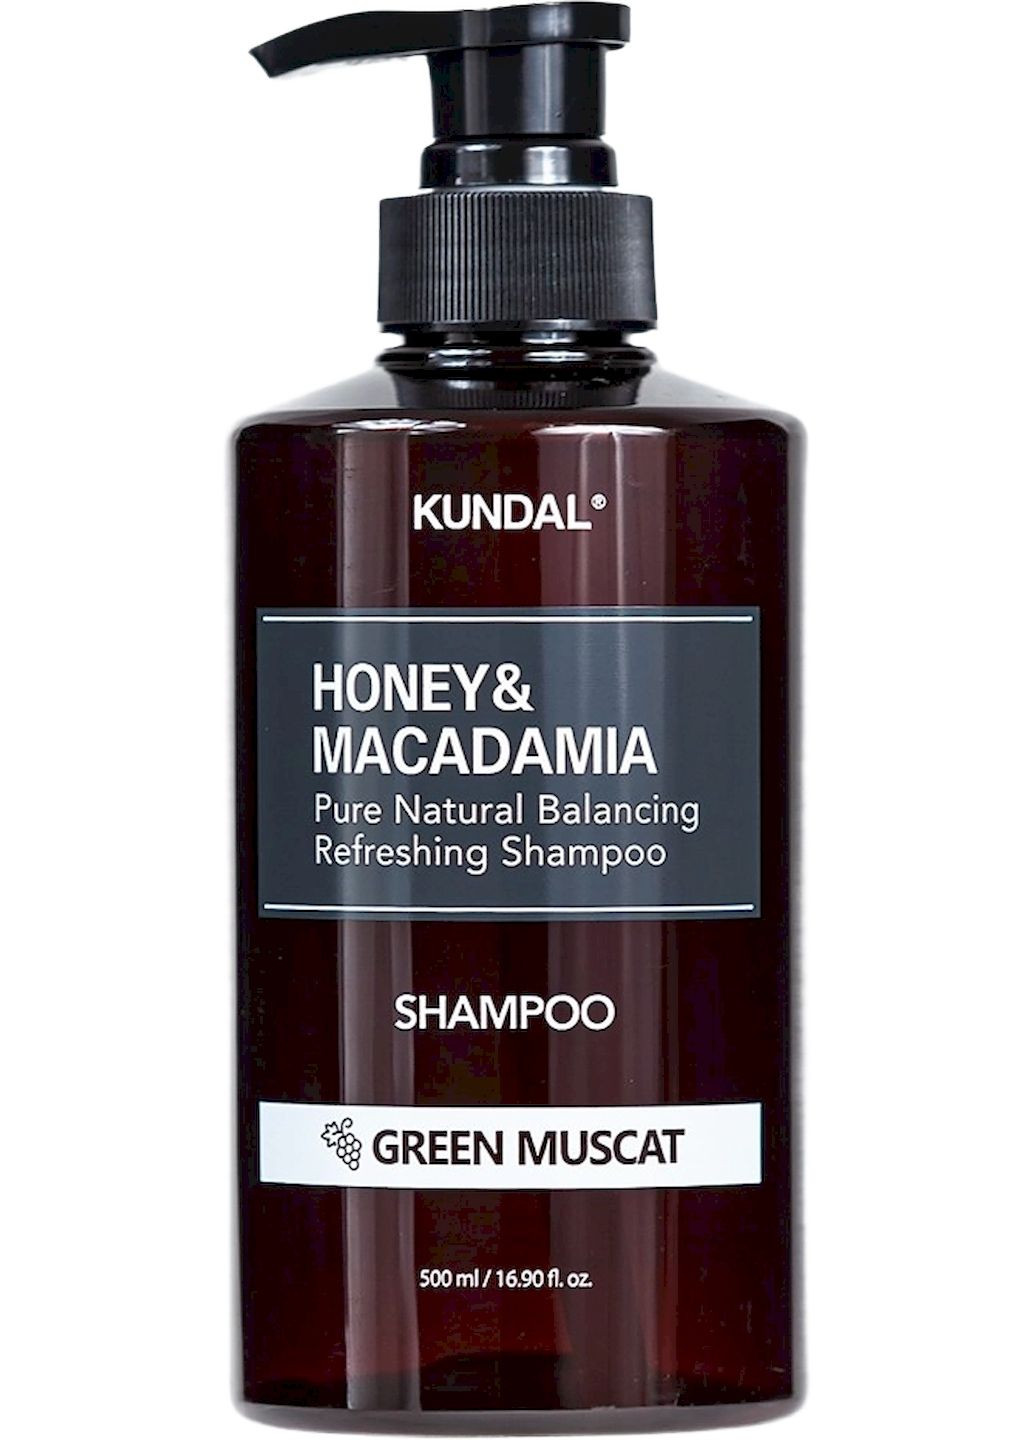 Бессульфатный шампунь Honey & Macadamia Nature Shampoo Green Muscat аромат зеленого винограда с мускусом, 500 мл Kundal (292794997)